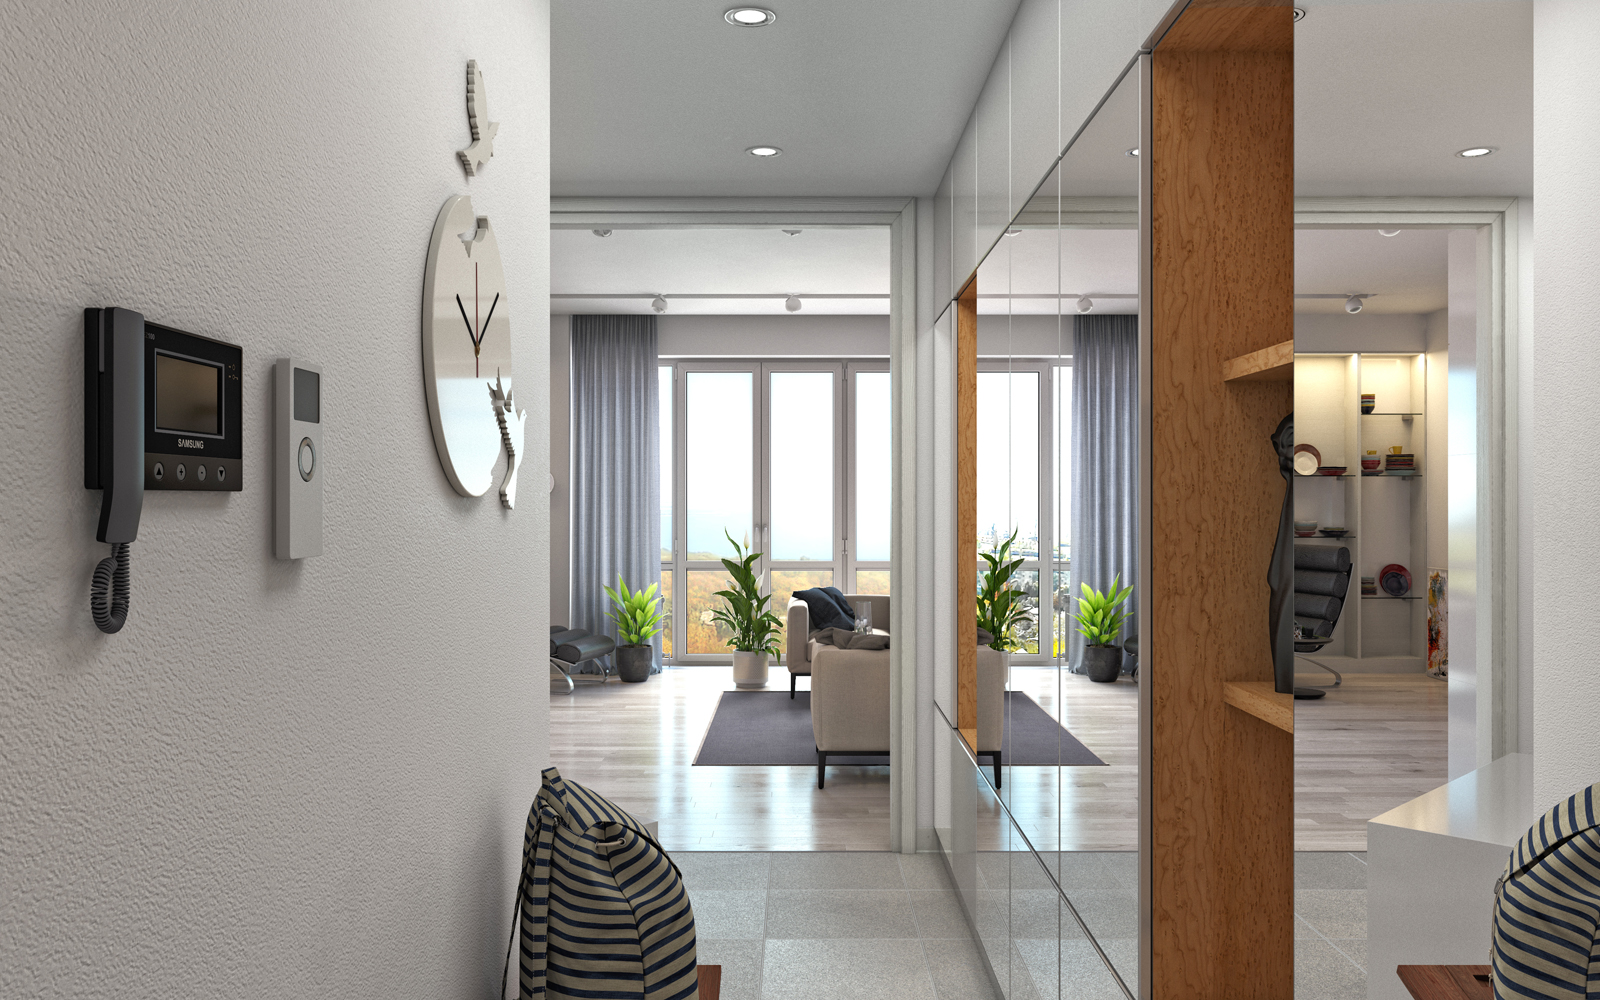 imagen de Complejo residencial "Nobel" apartamento de 1 habitación. en 3d max corona render